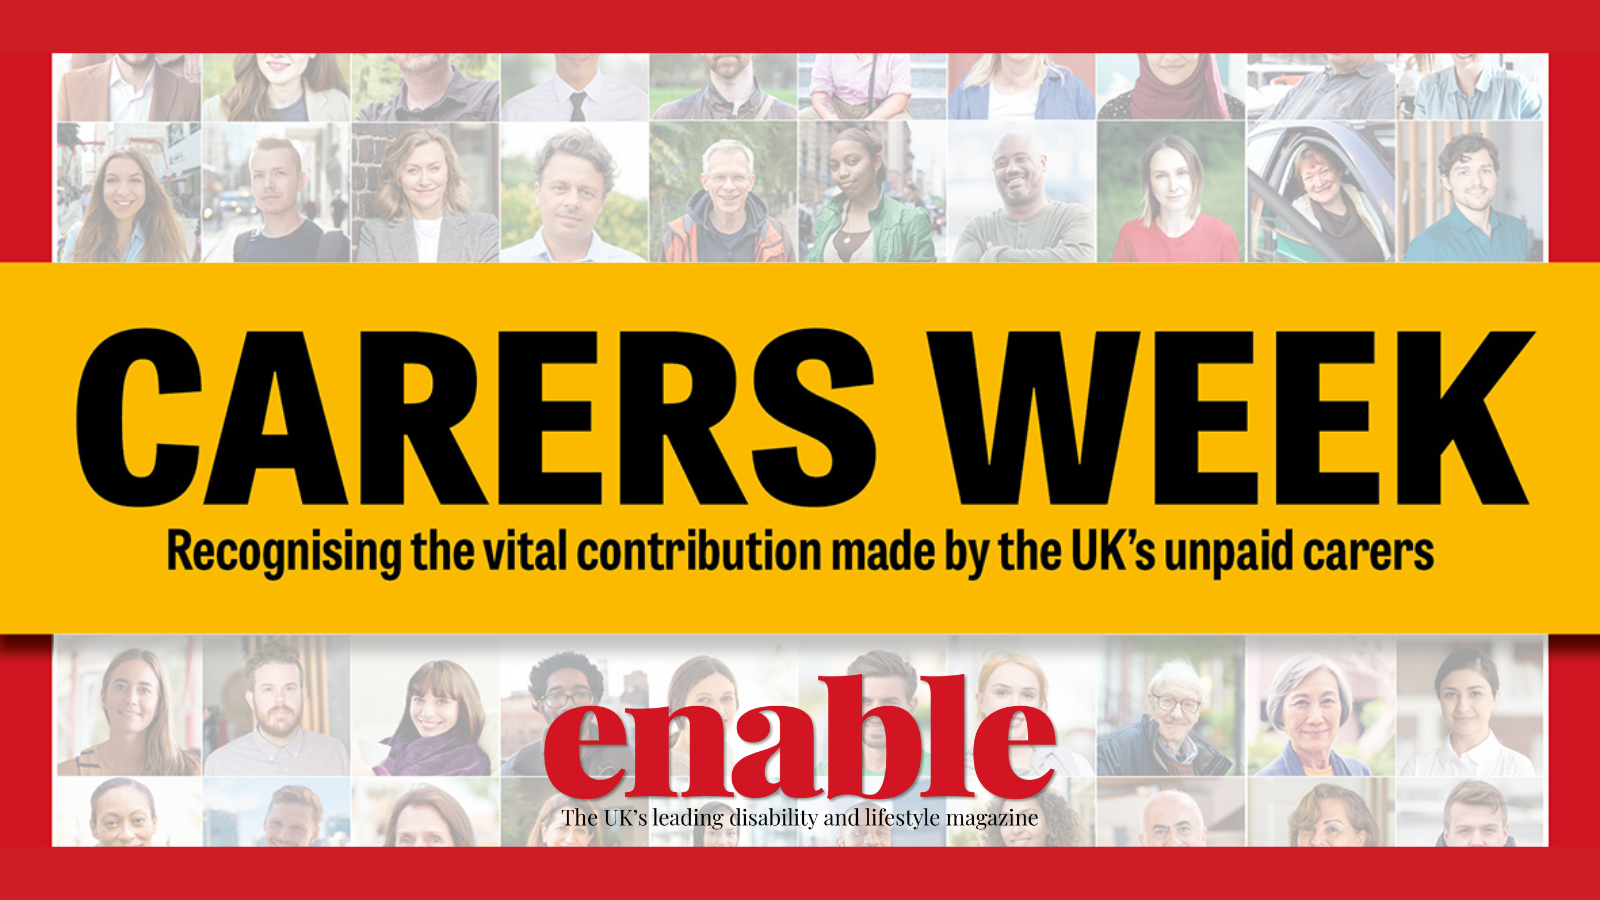 Carers Week - Enable Magazine